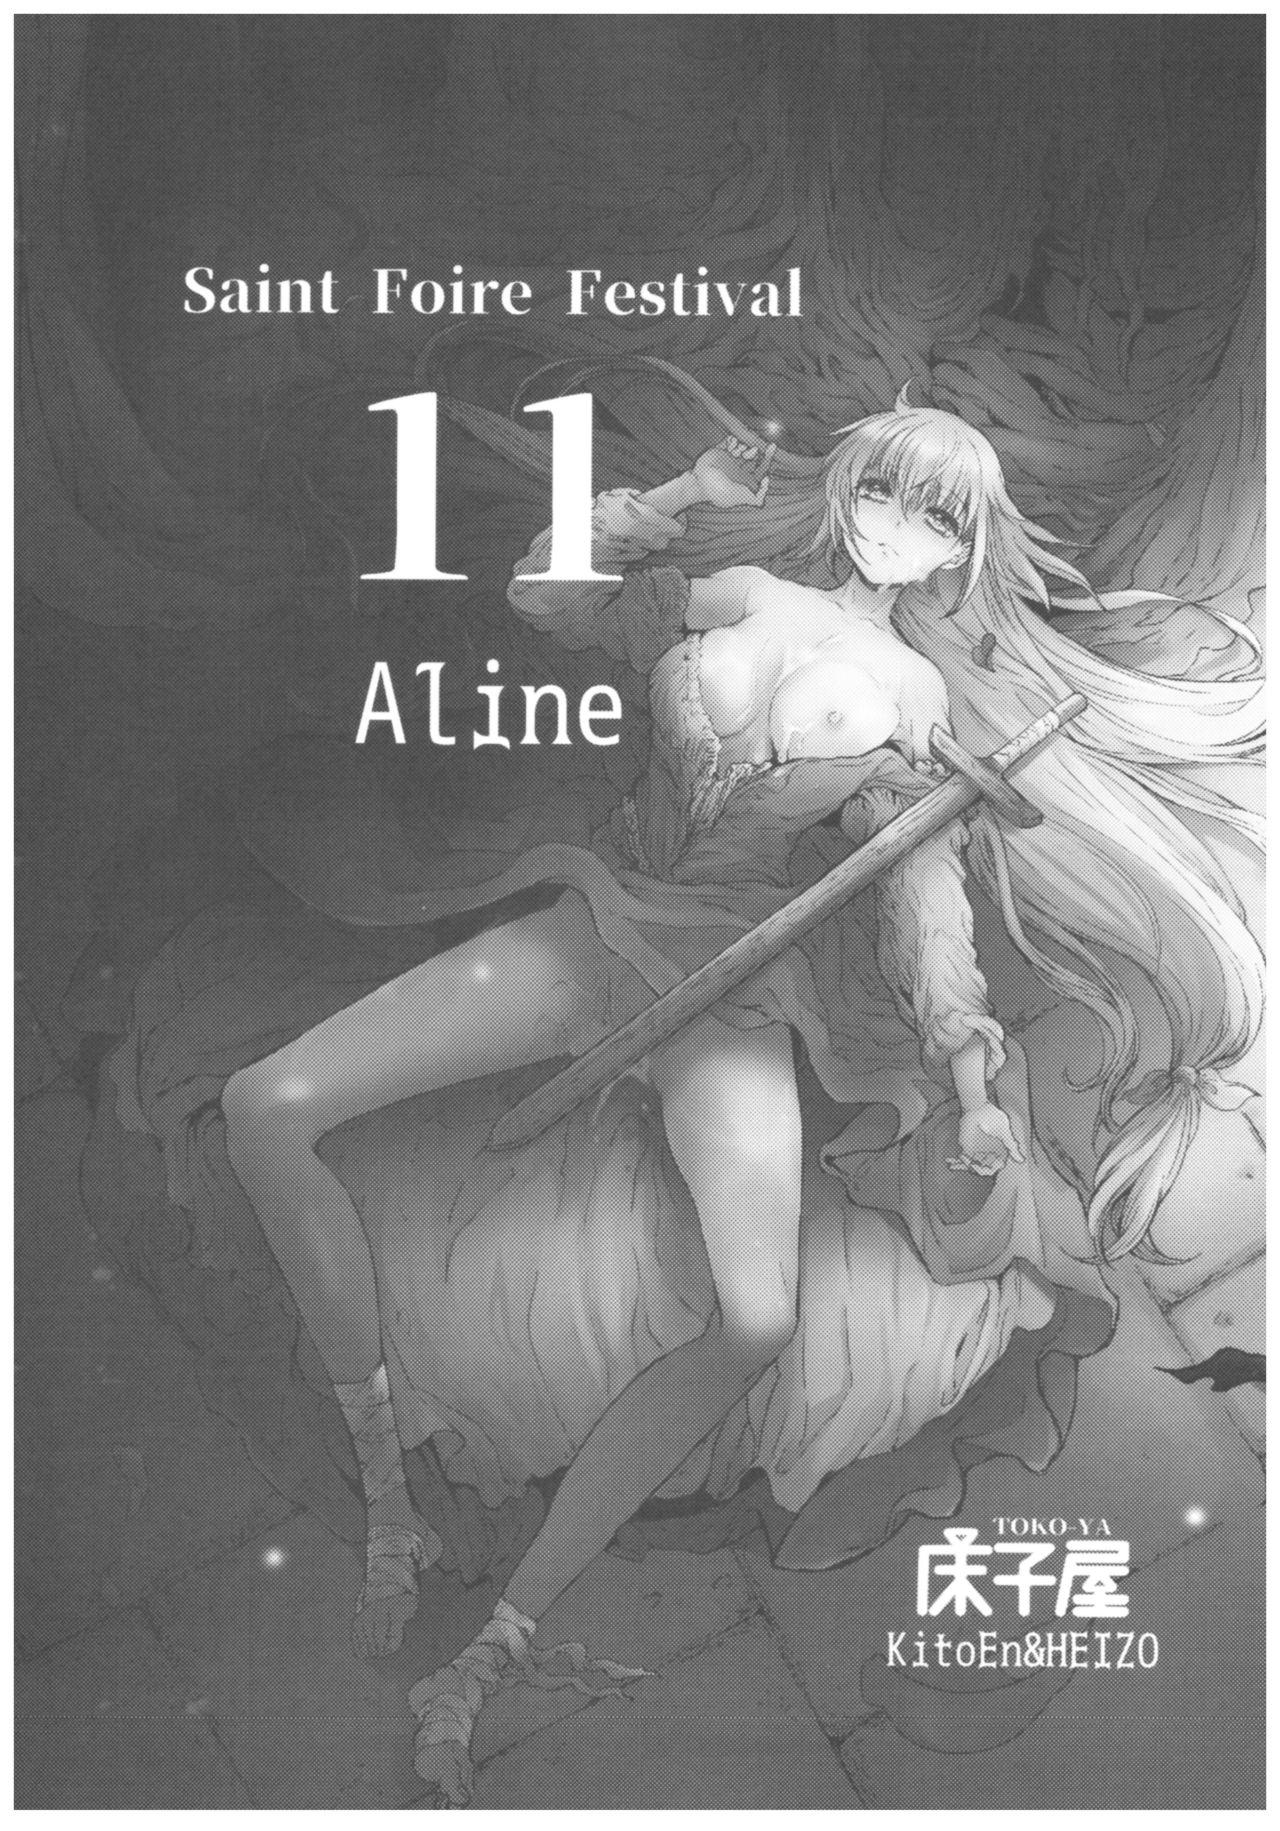 Saint Foire Festival 11 Aline 2